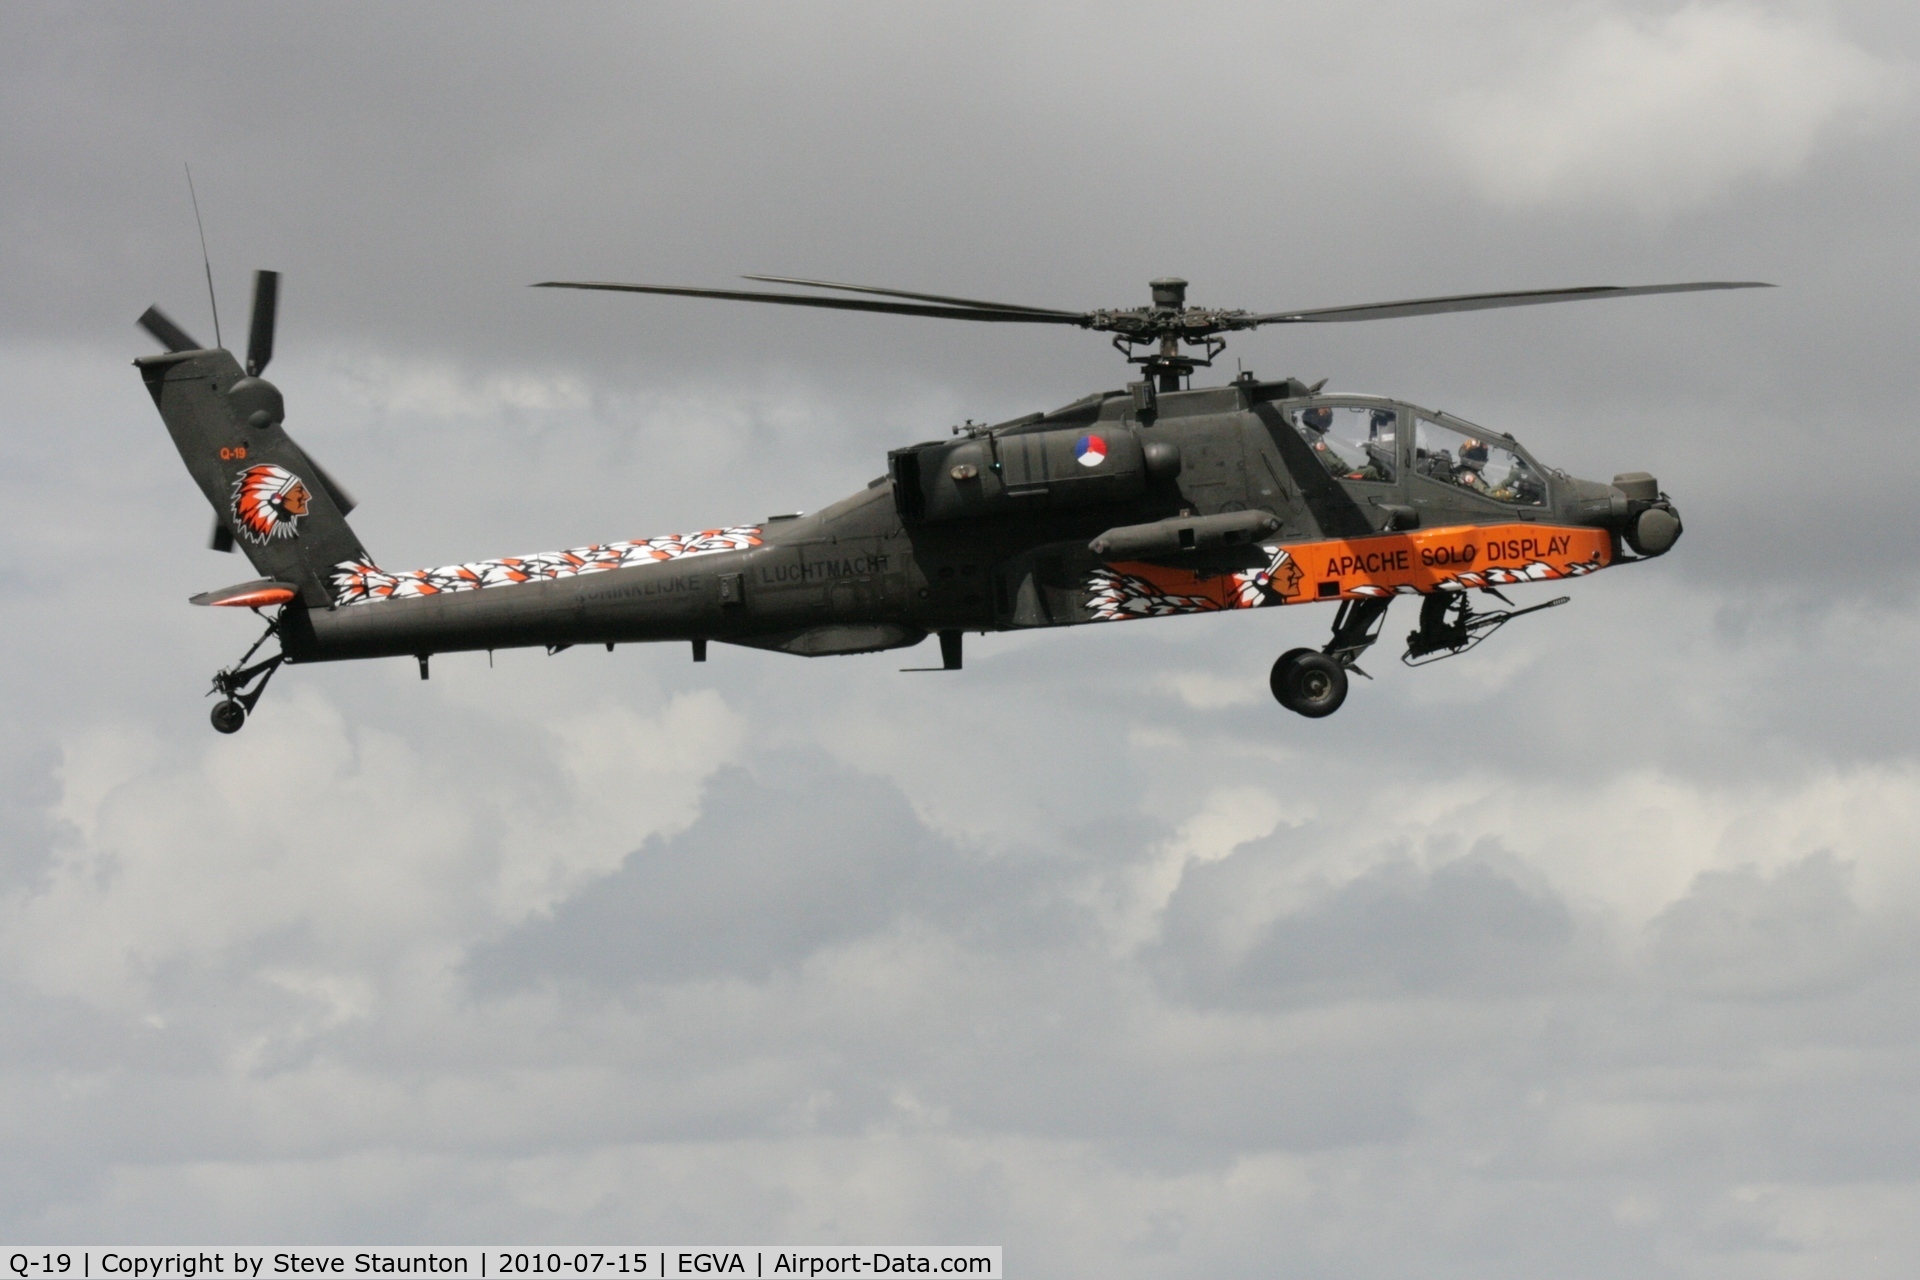 Q-19, Boeing AH-64DN Apache C/N DN019, Taken at the Royal International Air Tattoo 2010